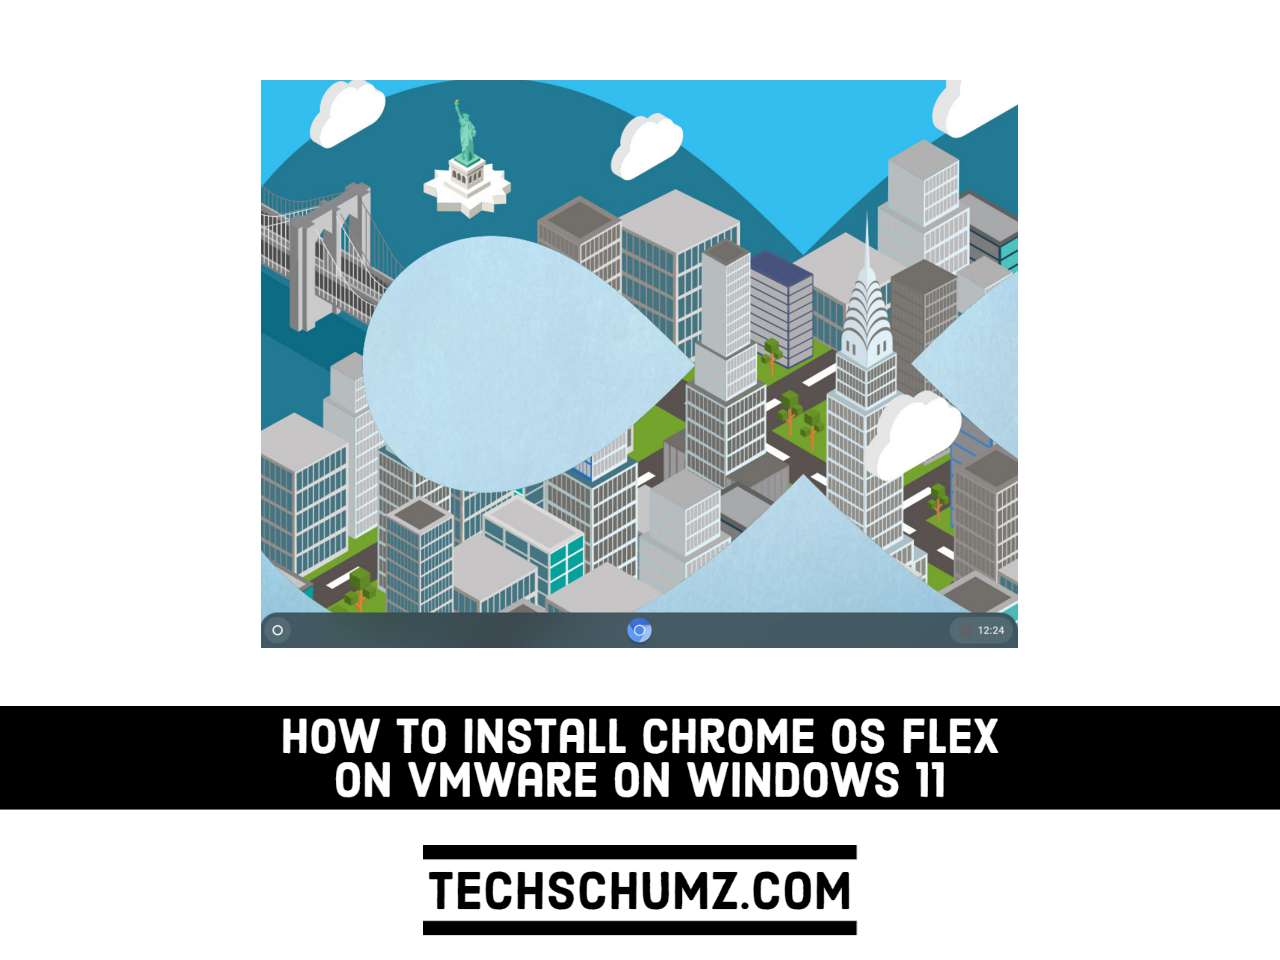 Comment installer Chrome OS Flex sur VMware sous Windows 11